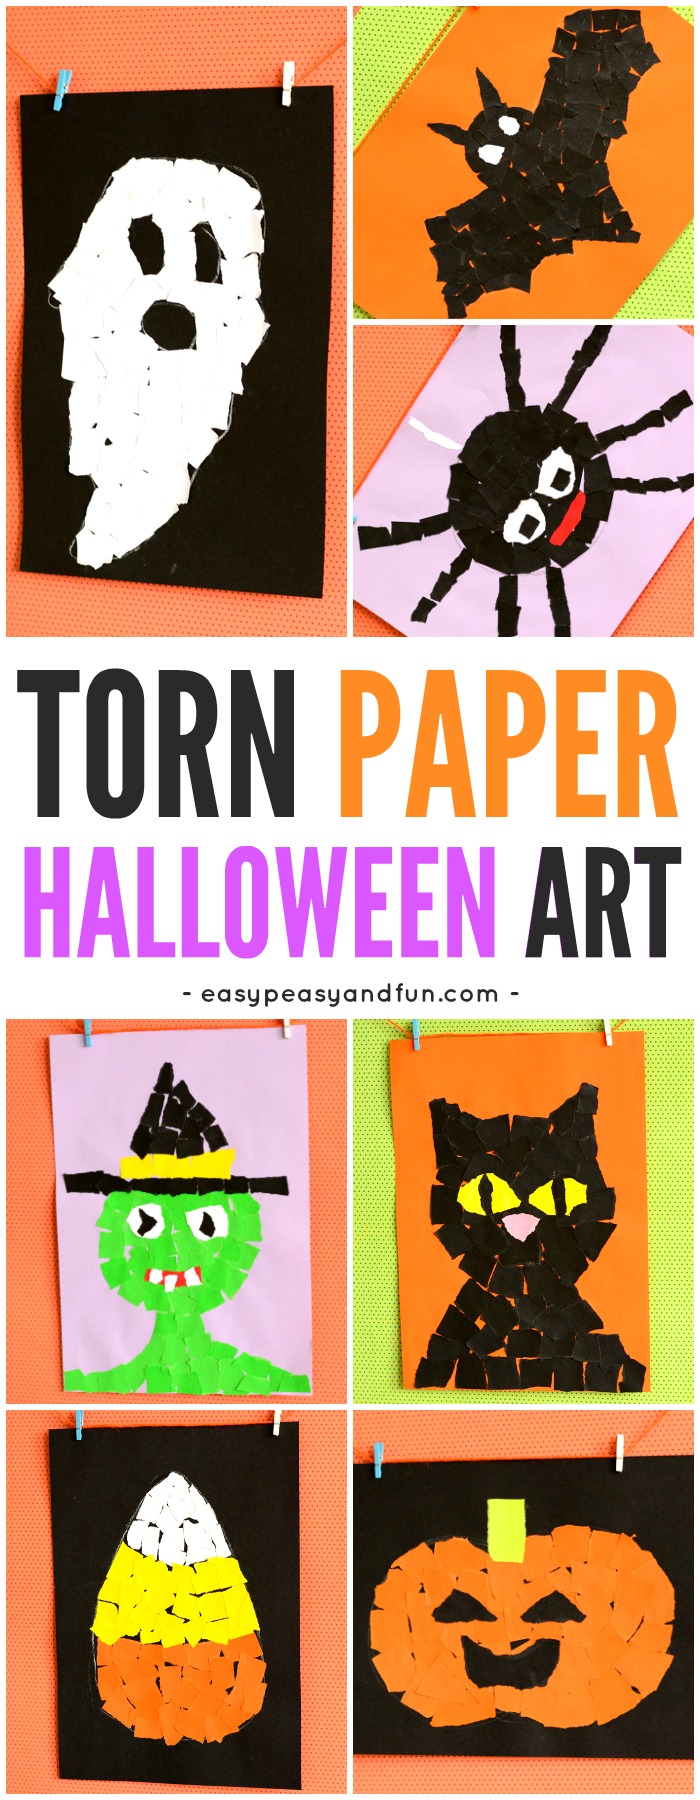 Halloween Torn Paper Art Ideas for Kids